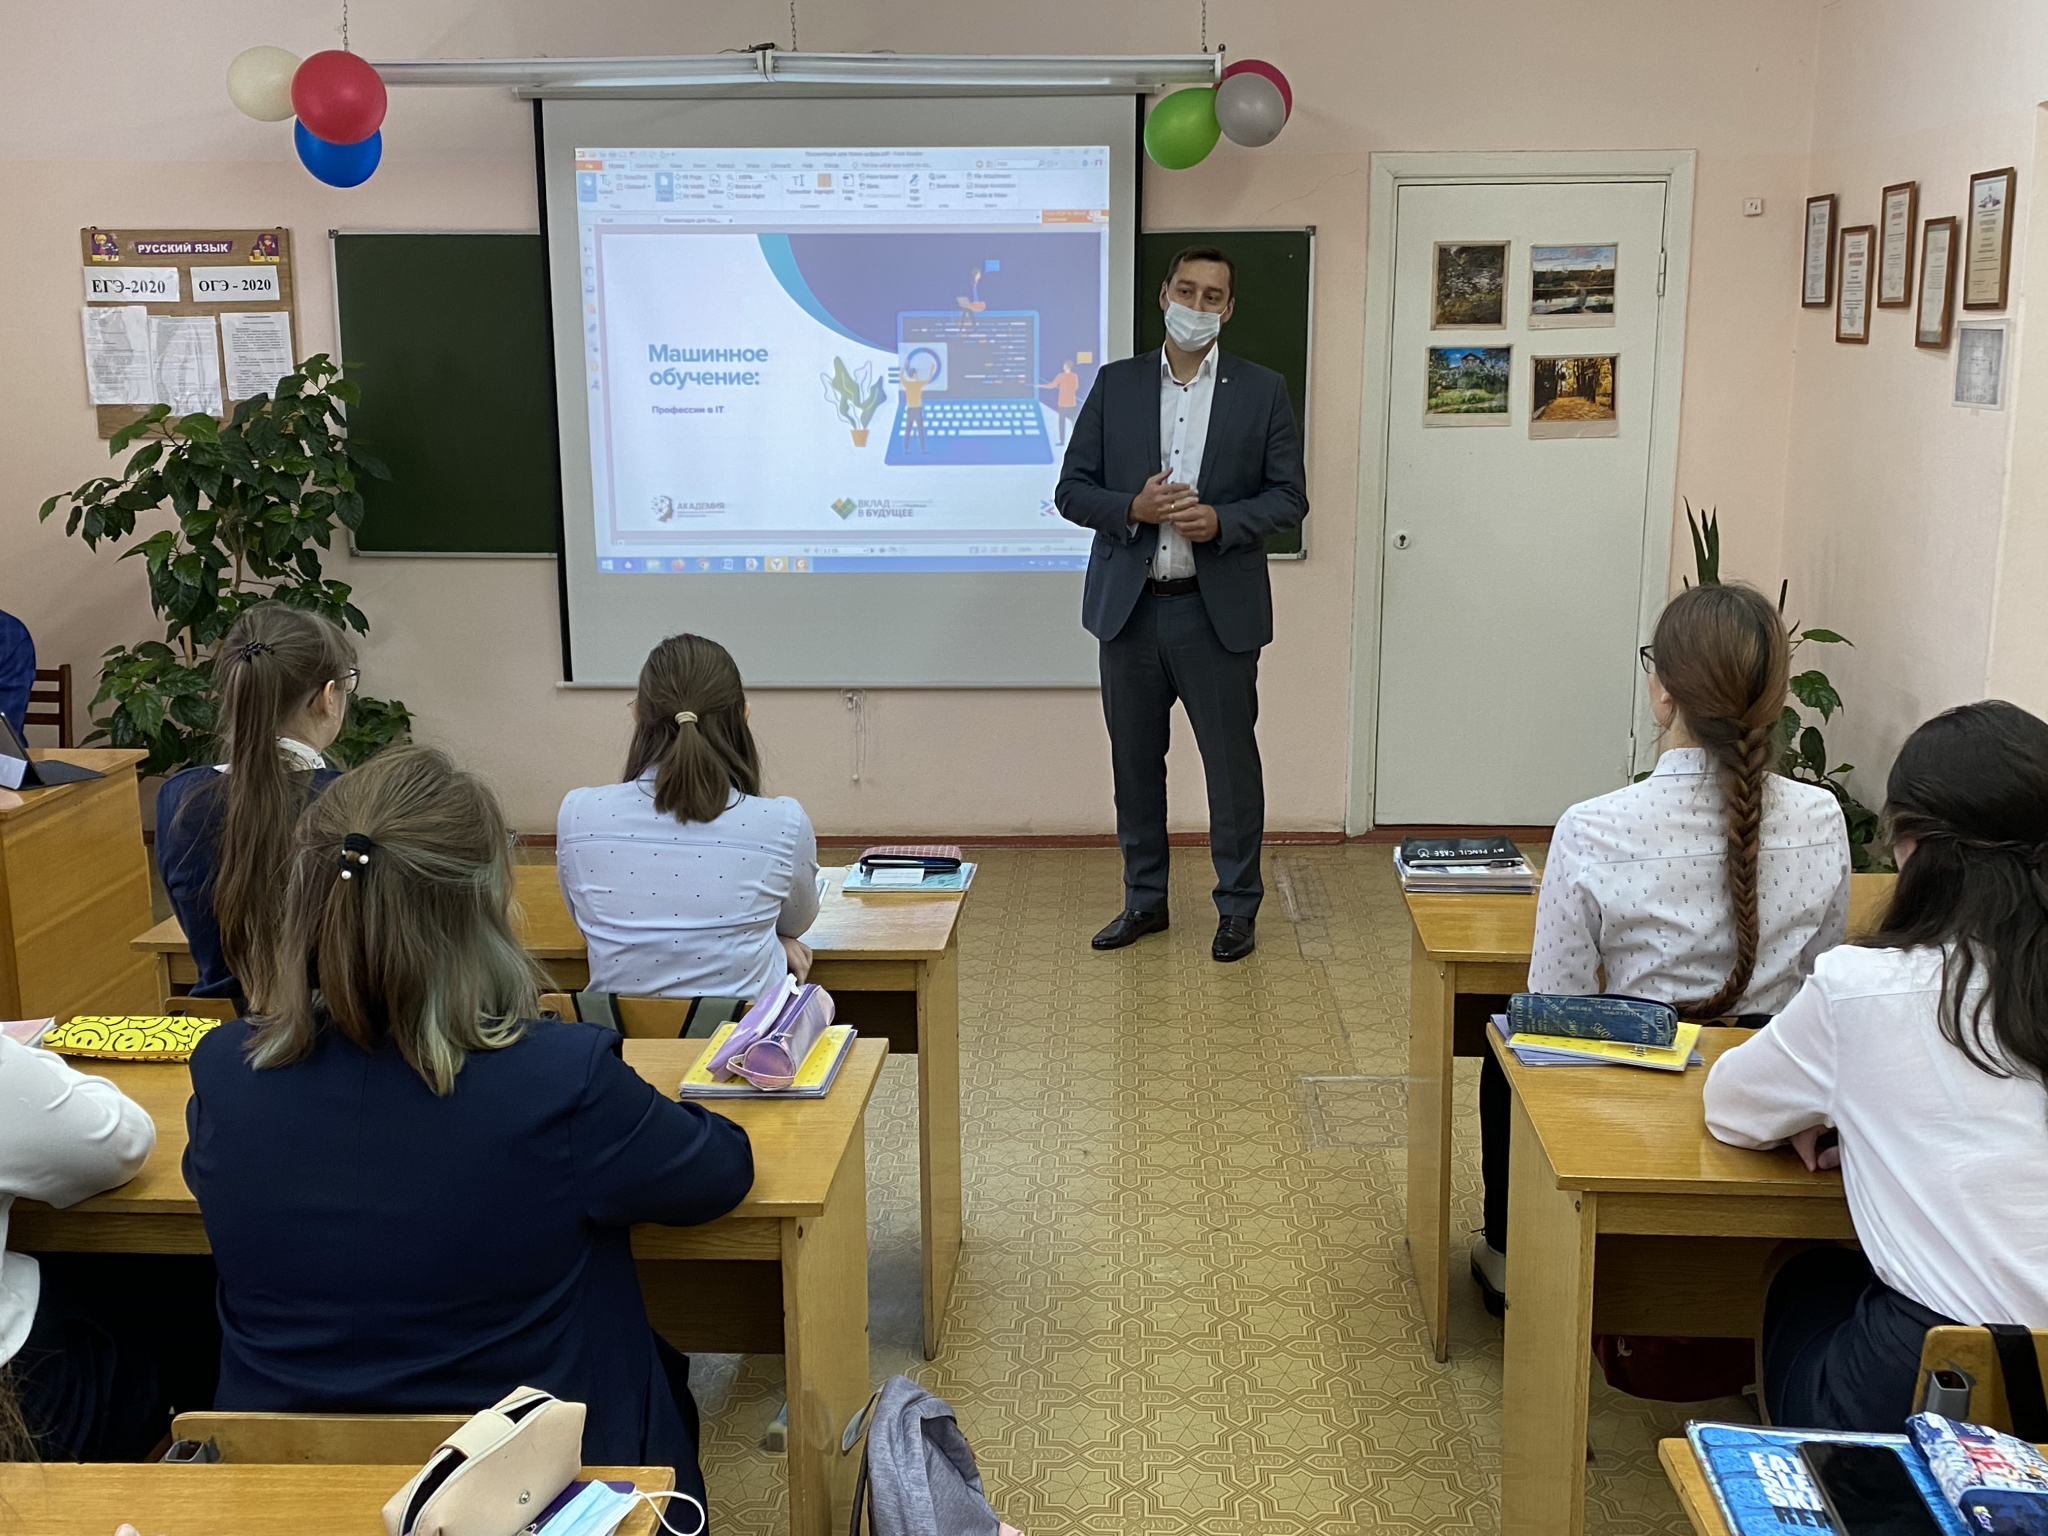 Сбербанк принимает активное участие в проведении «Урока цифры» в школах Йошкар-Олы